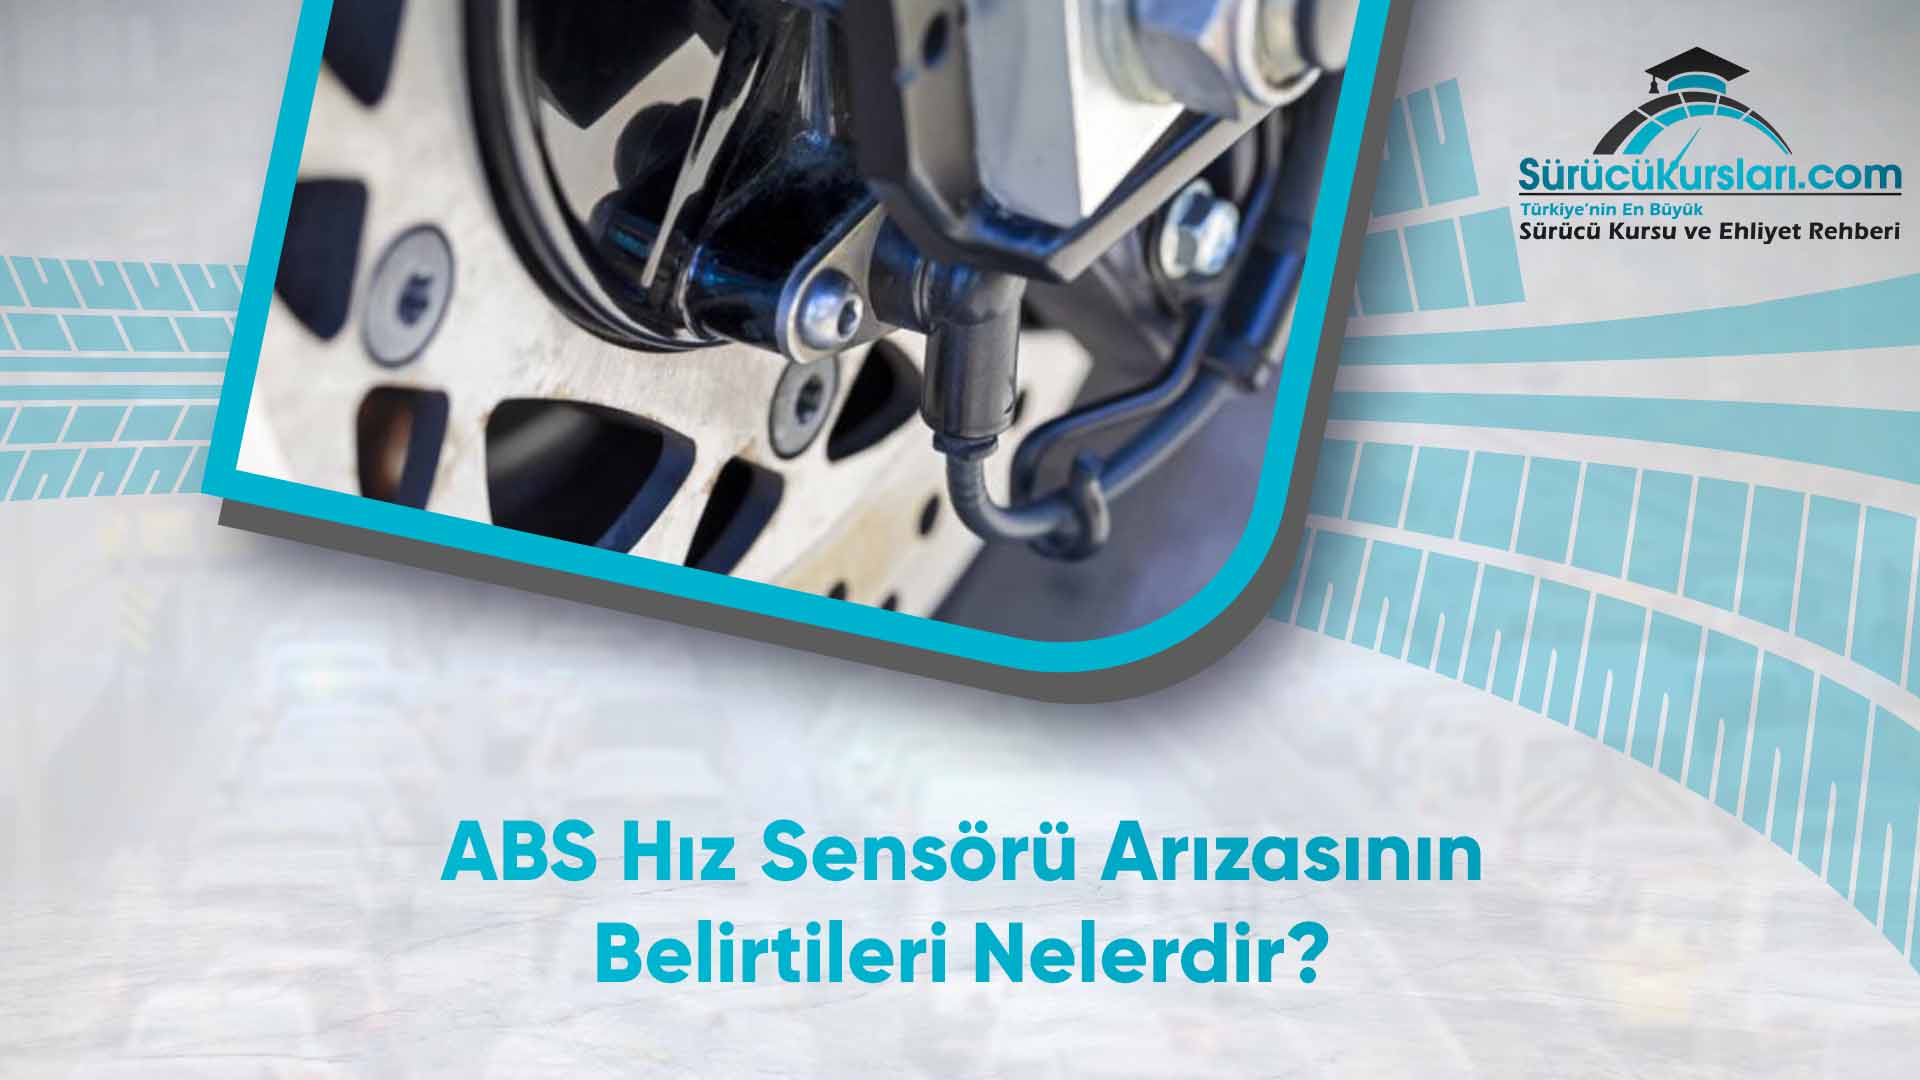 ABS Hız Sensörü Arızasının Belirtileri Nelerdir